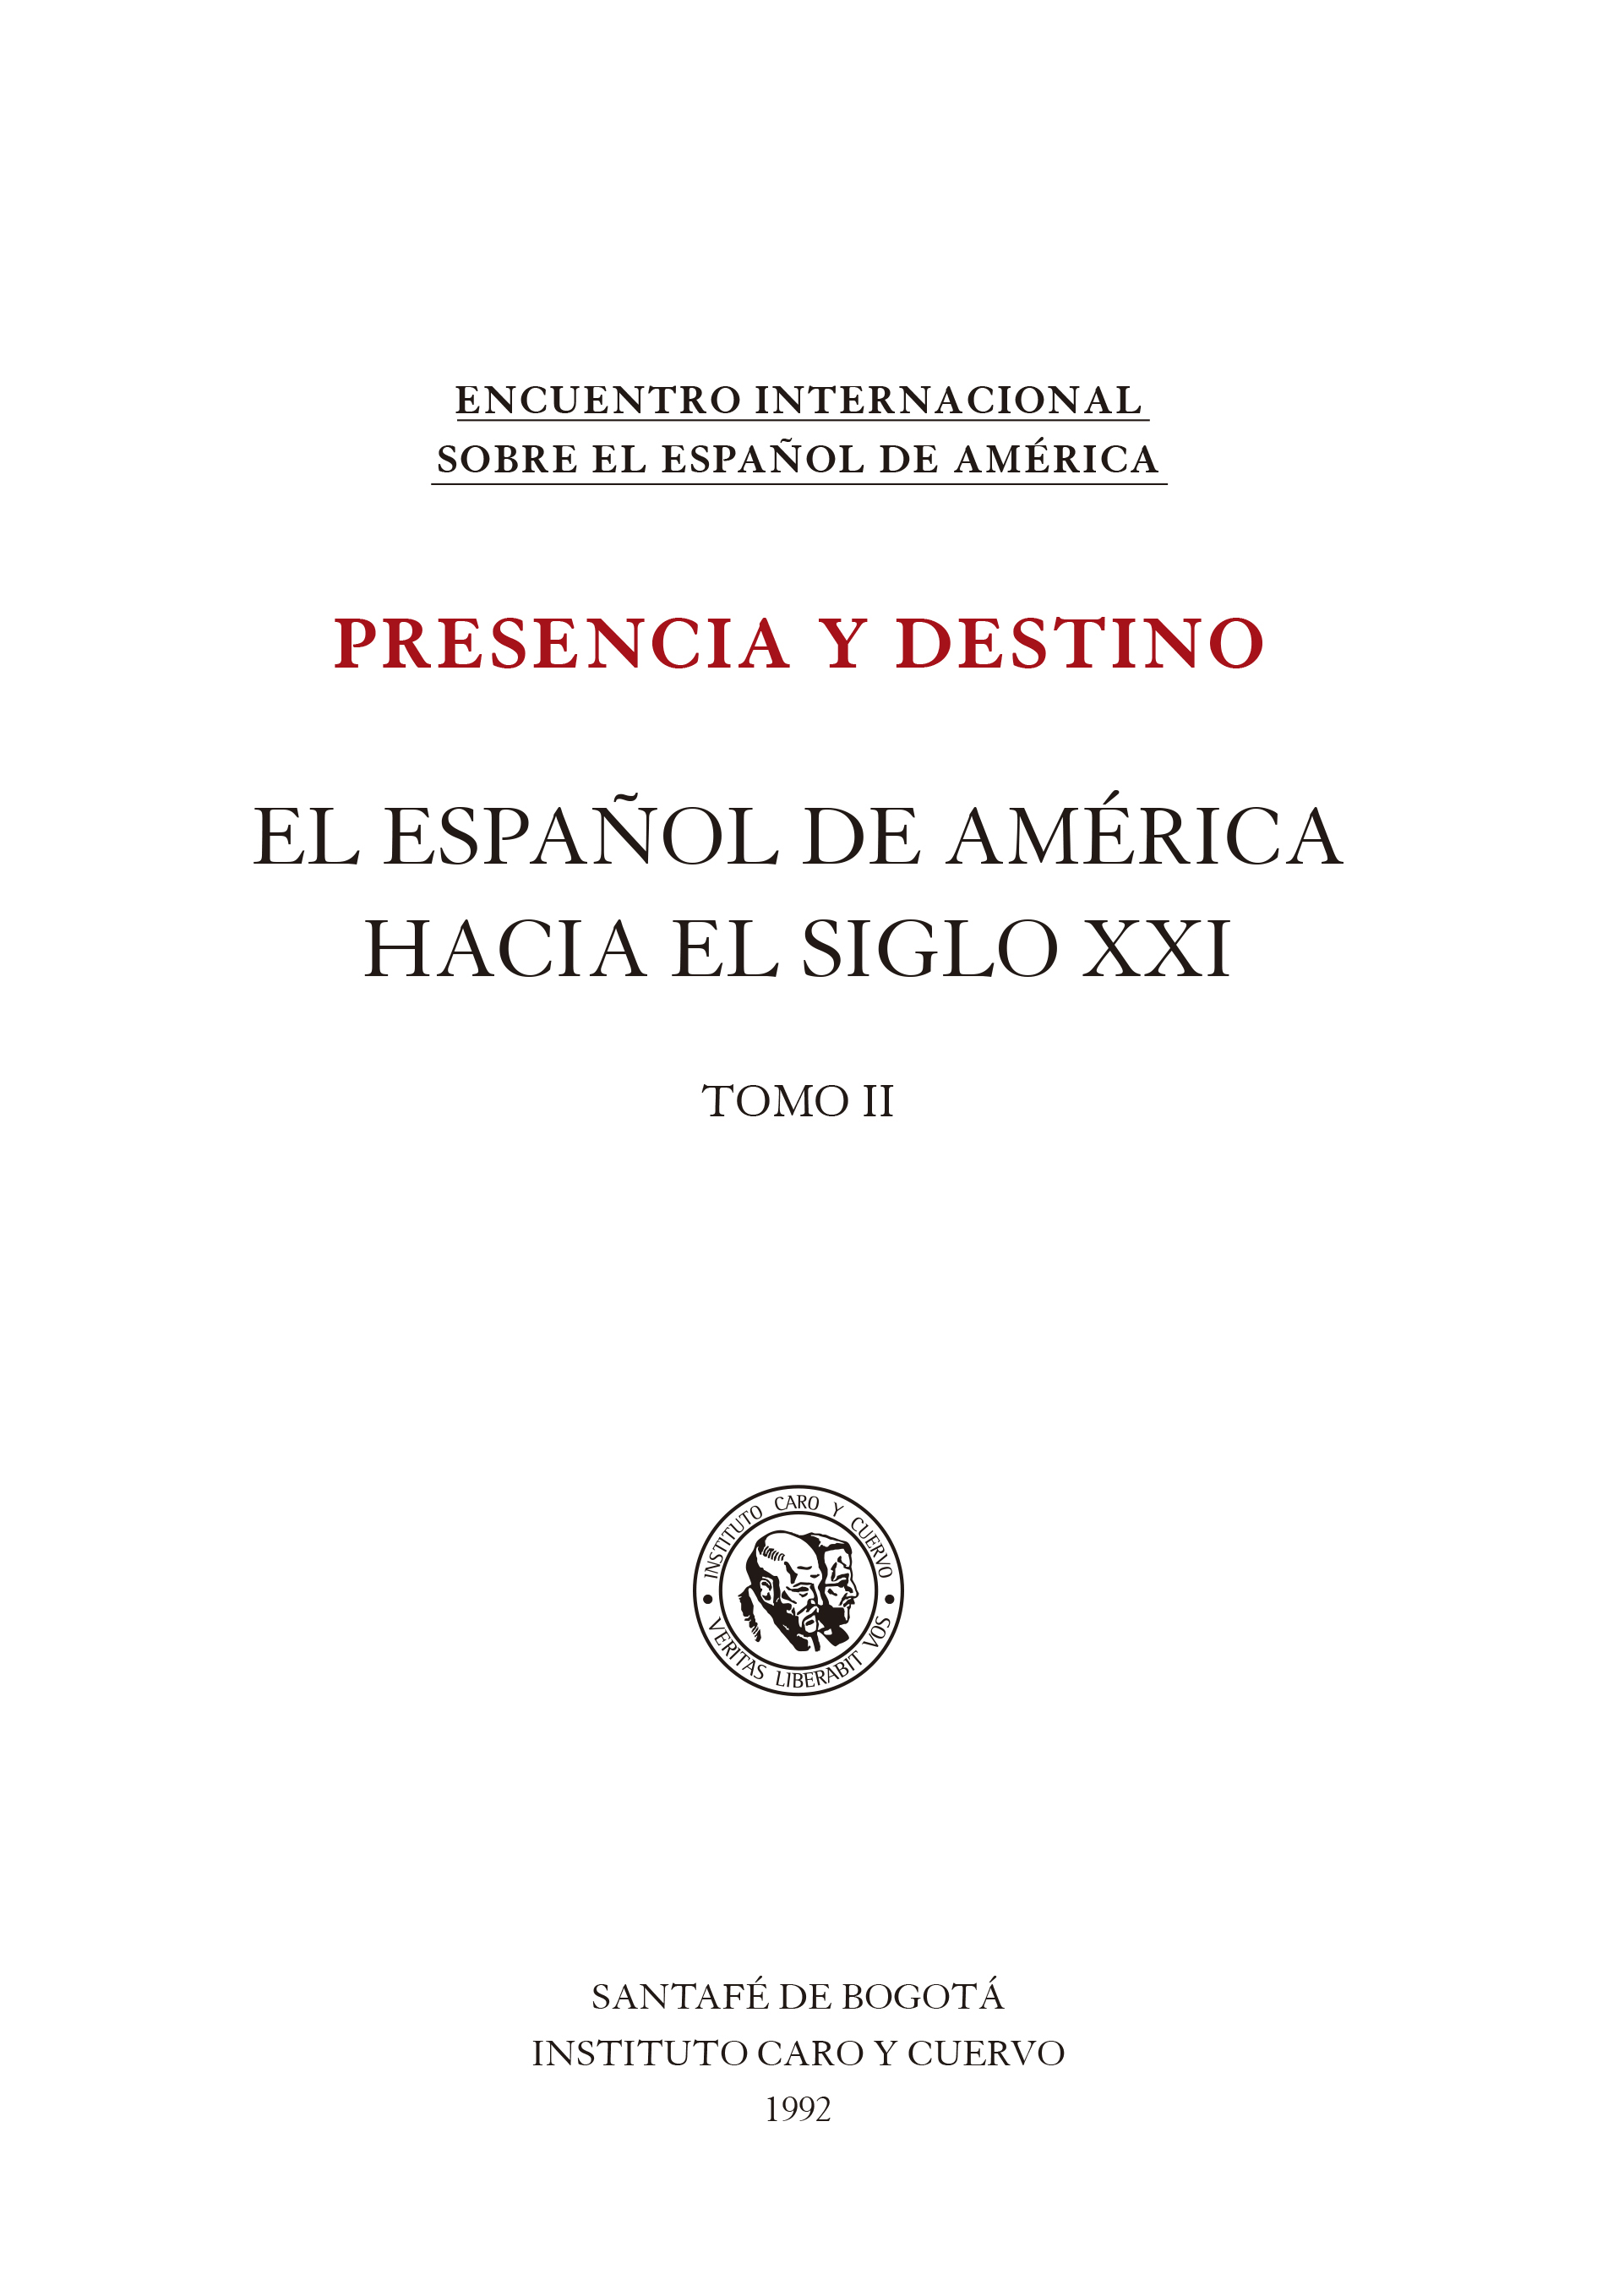 El español de América hacia el siglo XXI, Tomo II